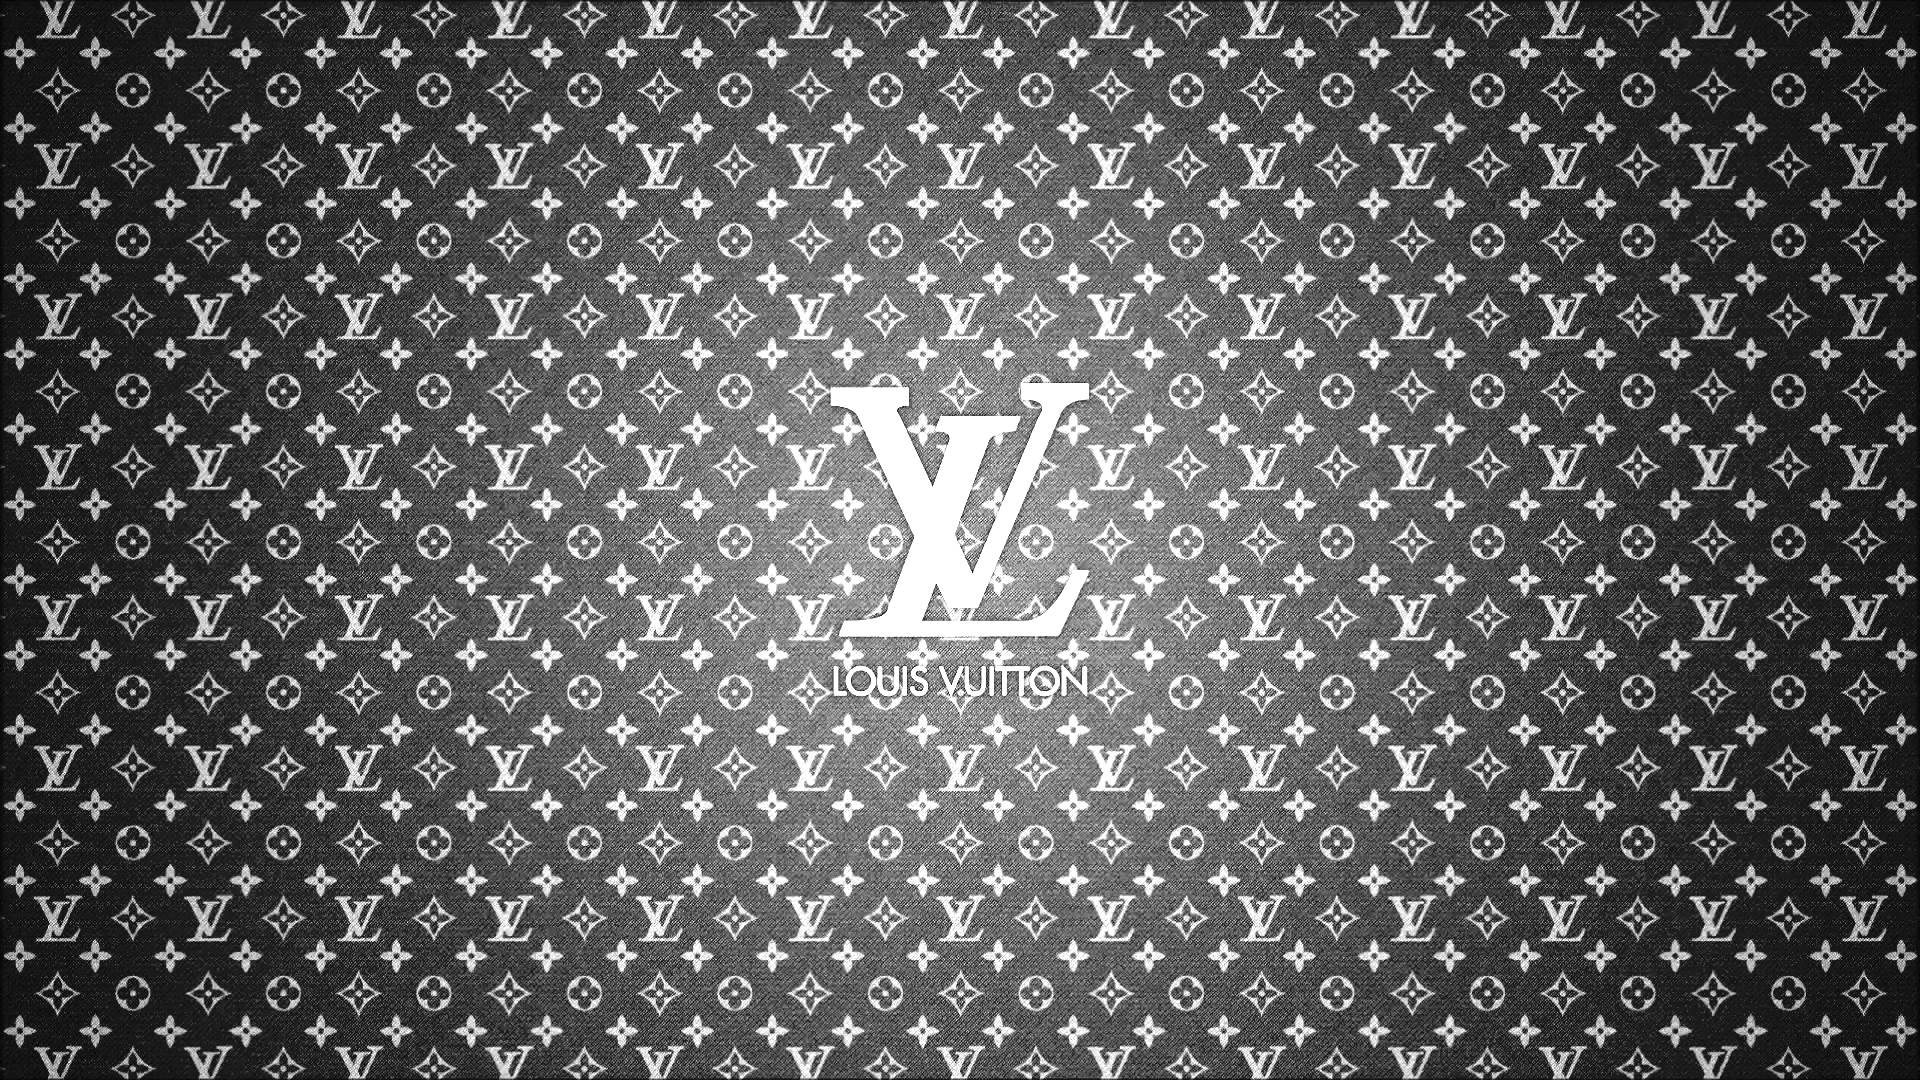 Hình nền Louis Vuitton HD - Muốn có một hình nền đẹp và sắc nét trên màn hình của bạn? Không cần phải bận tâm, Louis Vuitton sẽ mang đến cho bạn những hình nền chất lượng cao và độ phân giải Full HD. Với những hình ảnh được thiết kế tinh tế và độc đáo, hình nền Louis Vuitton HD sẽ giúp bạn tôn lên vẻ đẳng cấp và sang trọng.